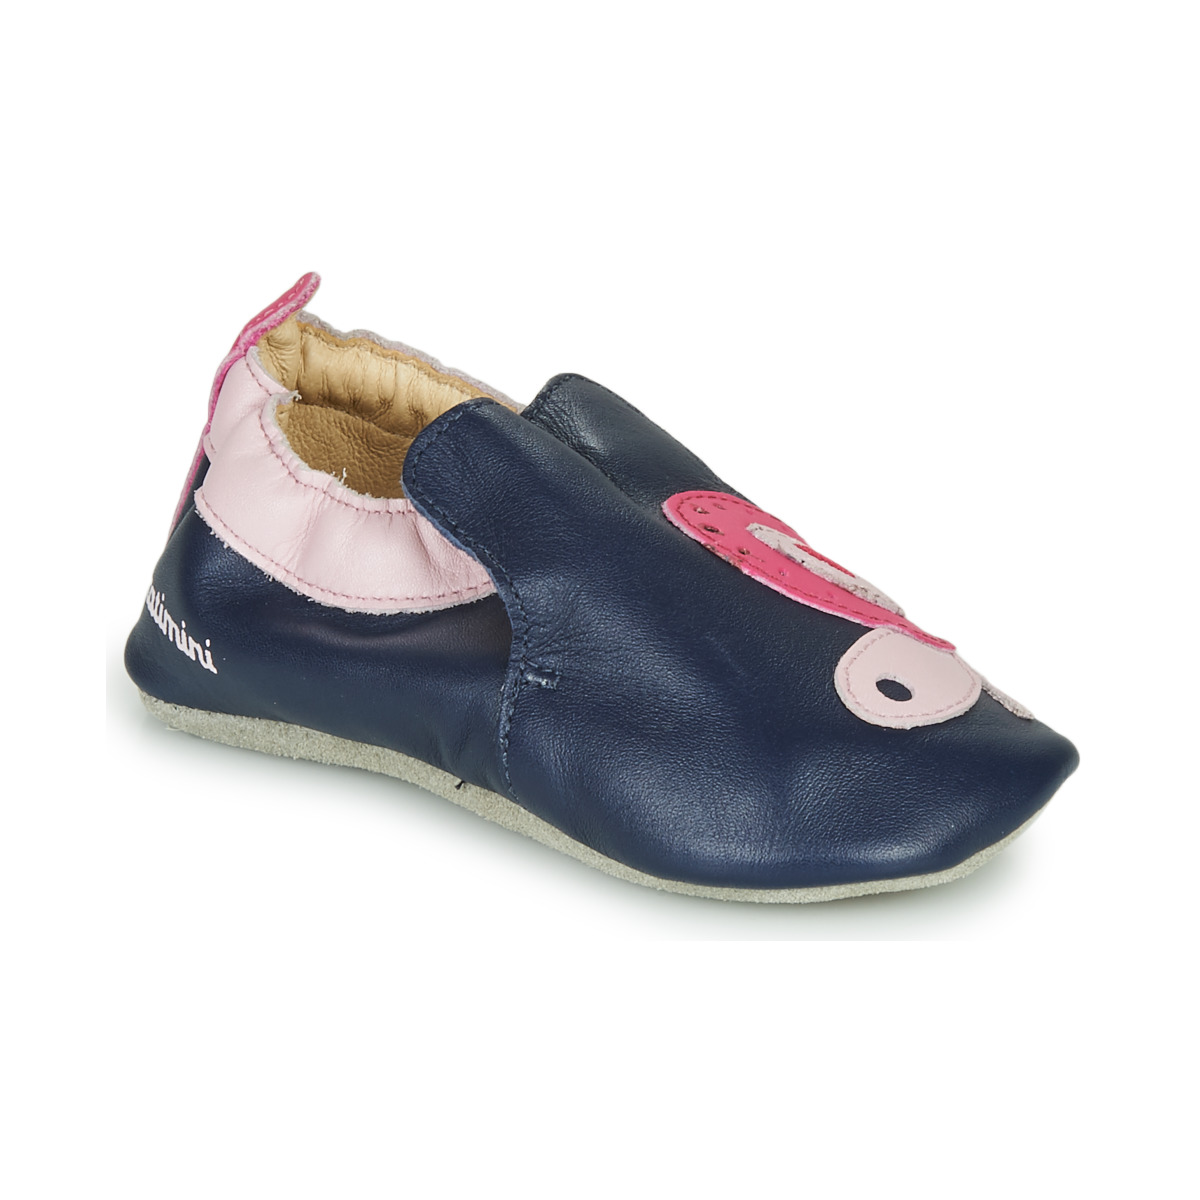 Παπούτσια Κορίτσι Παντόφλες Catimini CITOLA Marine / Ροζ